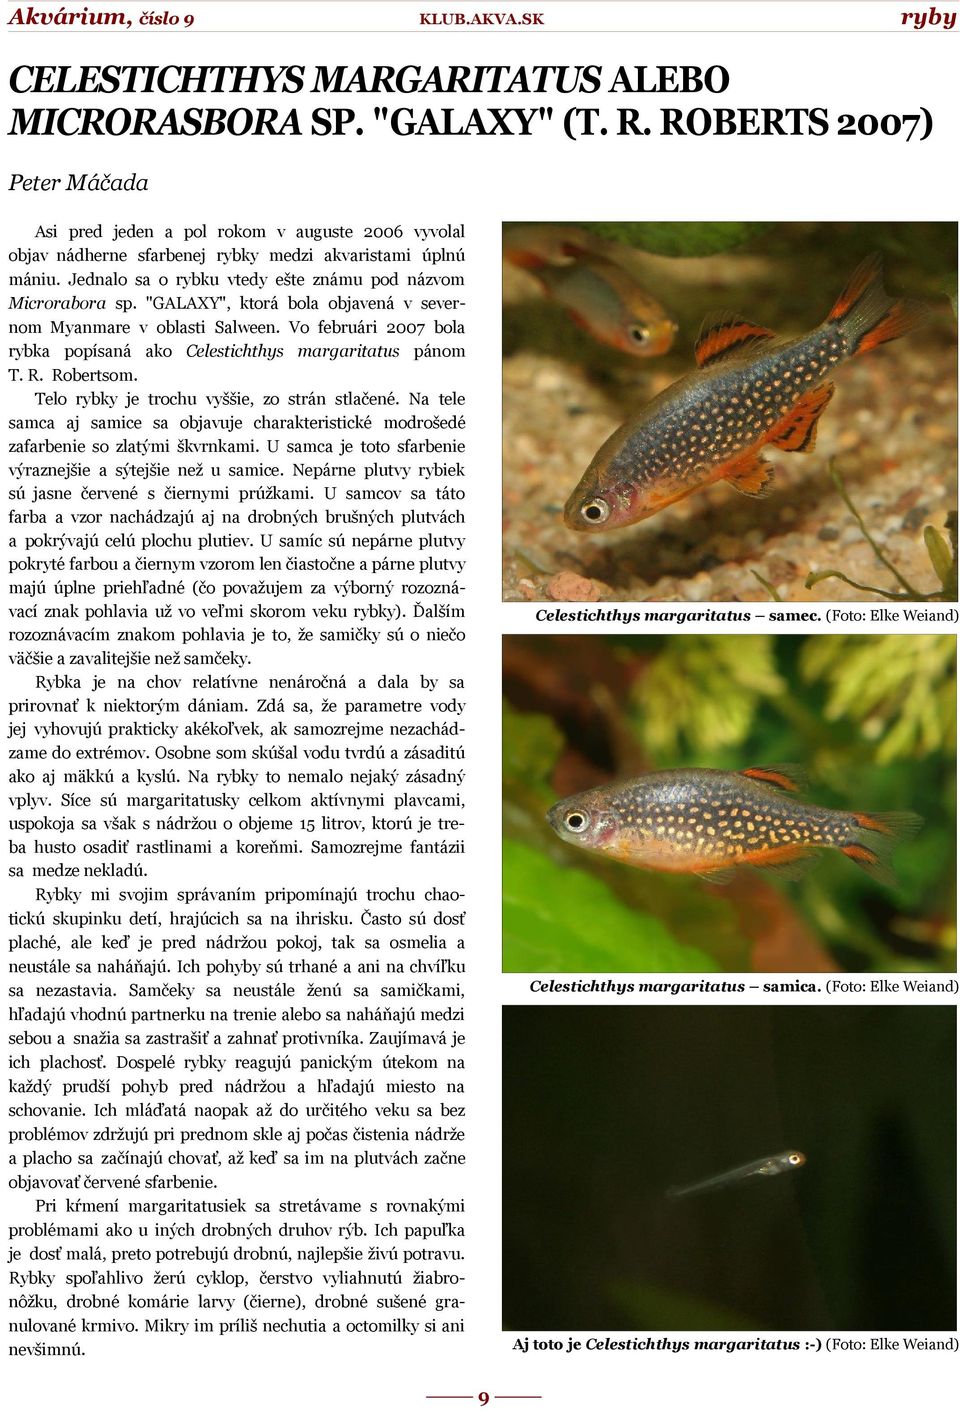 Jednalo sa o rybku vtedy ešte známu pod názvom Microrabora sp. "GALAXY", ktorá bola objavená v severnom Myanmare v oblasti Salween.